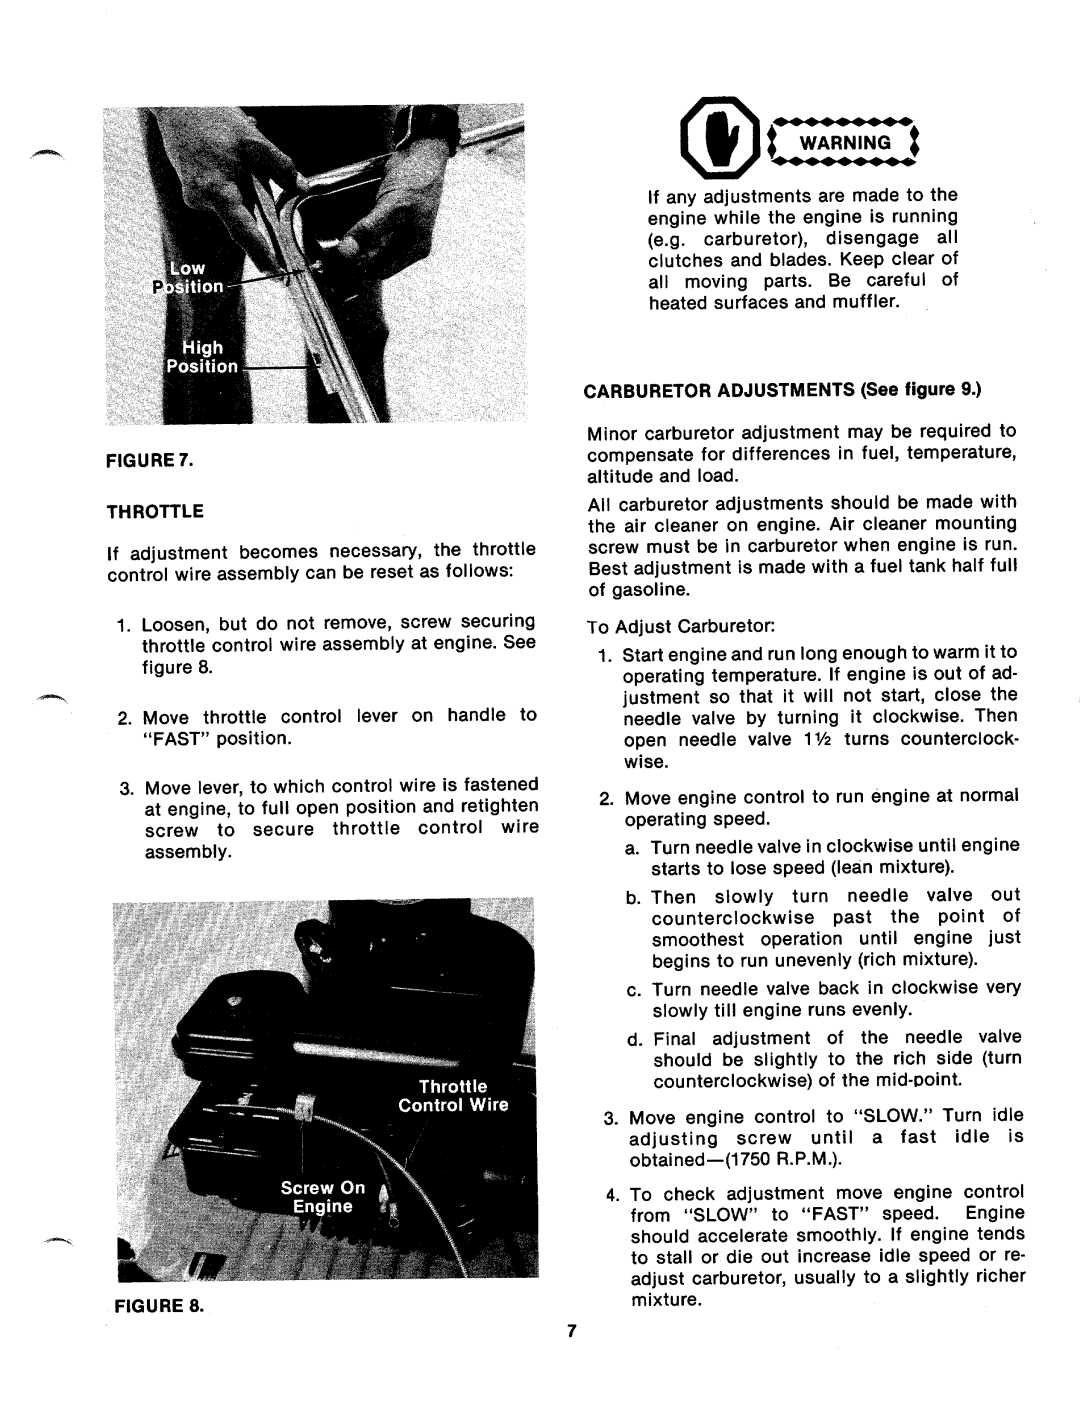 Bolens 111-162A, 111-152A manual 